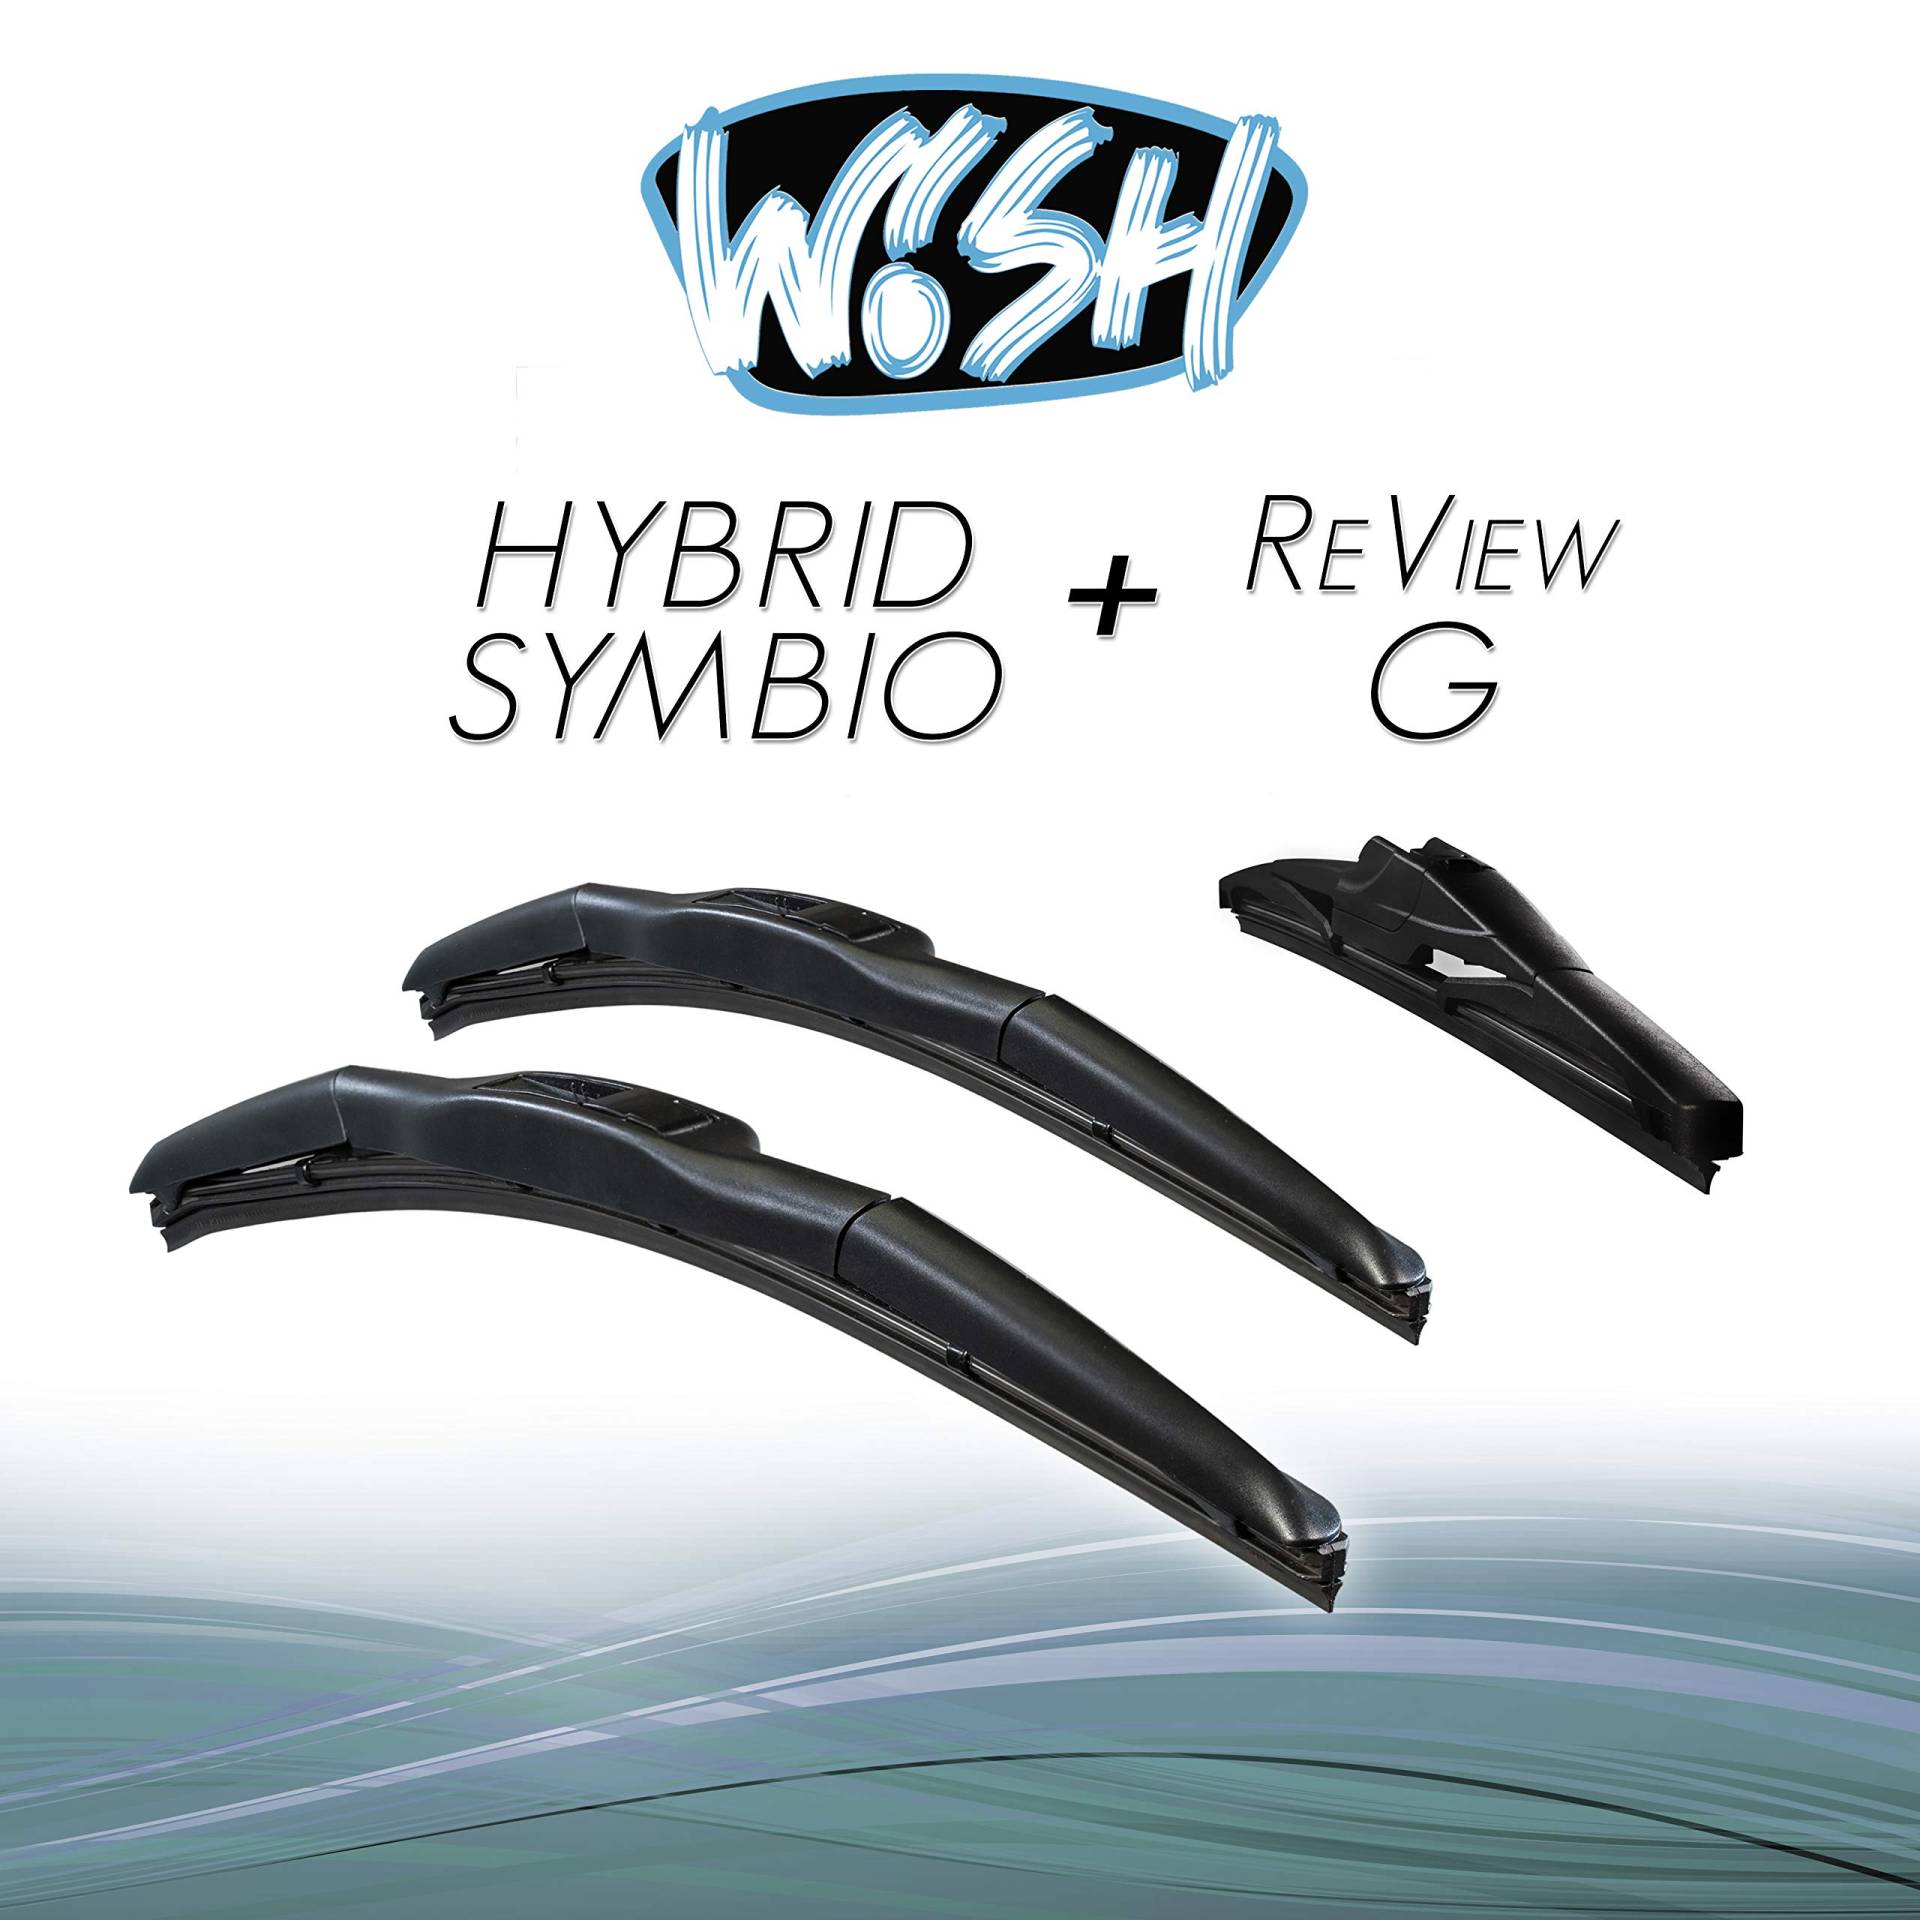 Wish® Hybrid Symbio Satz Front + Heck Scheibenwischer Länge: 24" 600mm / 19" 480mm / 14" 350mm Wischblätter Vorne und Hinten Hybrid-Scheibenwischer + Review G HS24.19.14RG von Wish